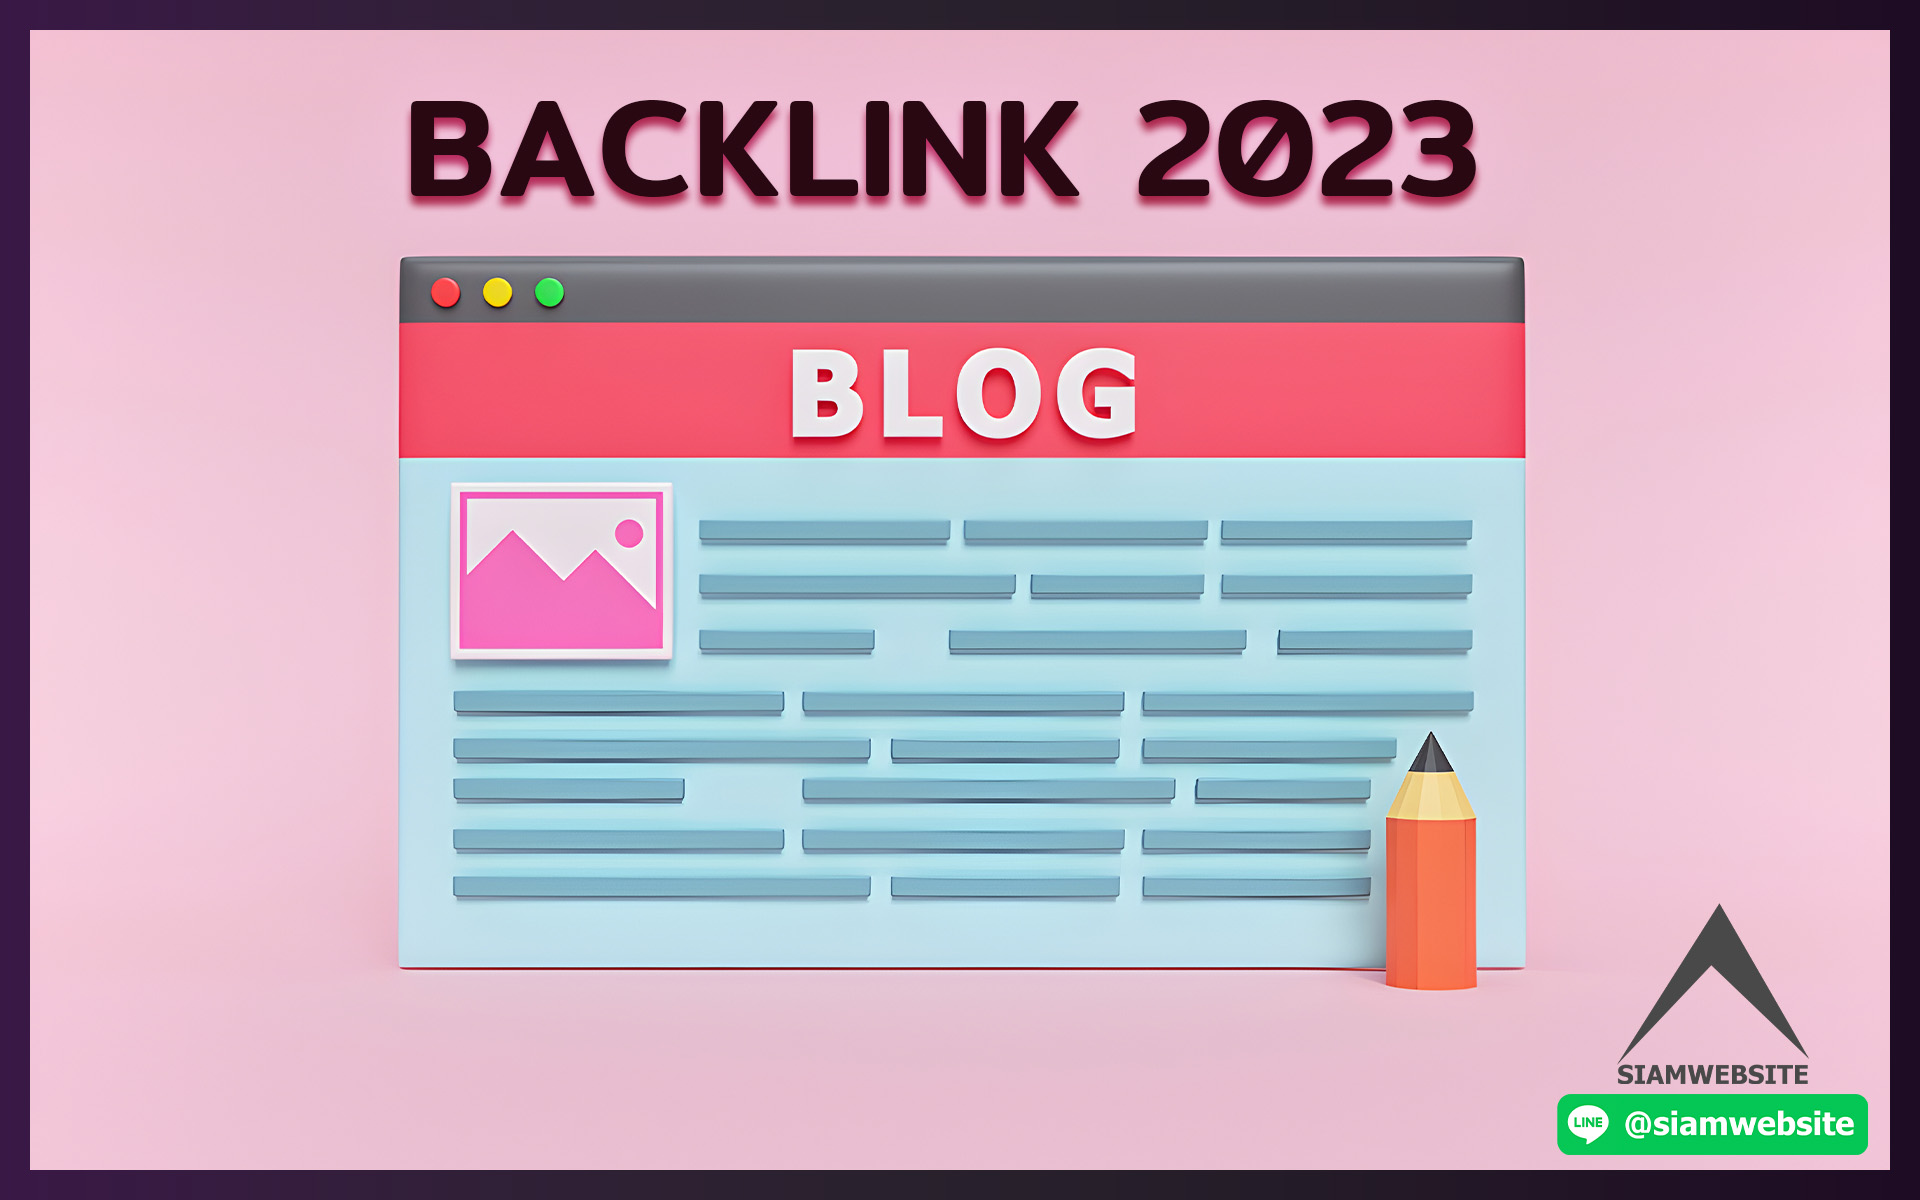 BACKLINK 2023